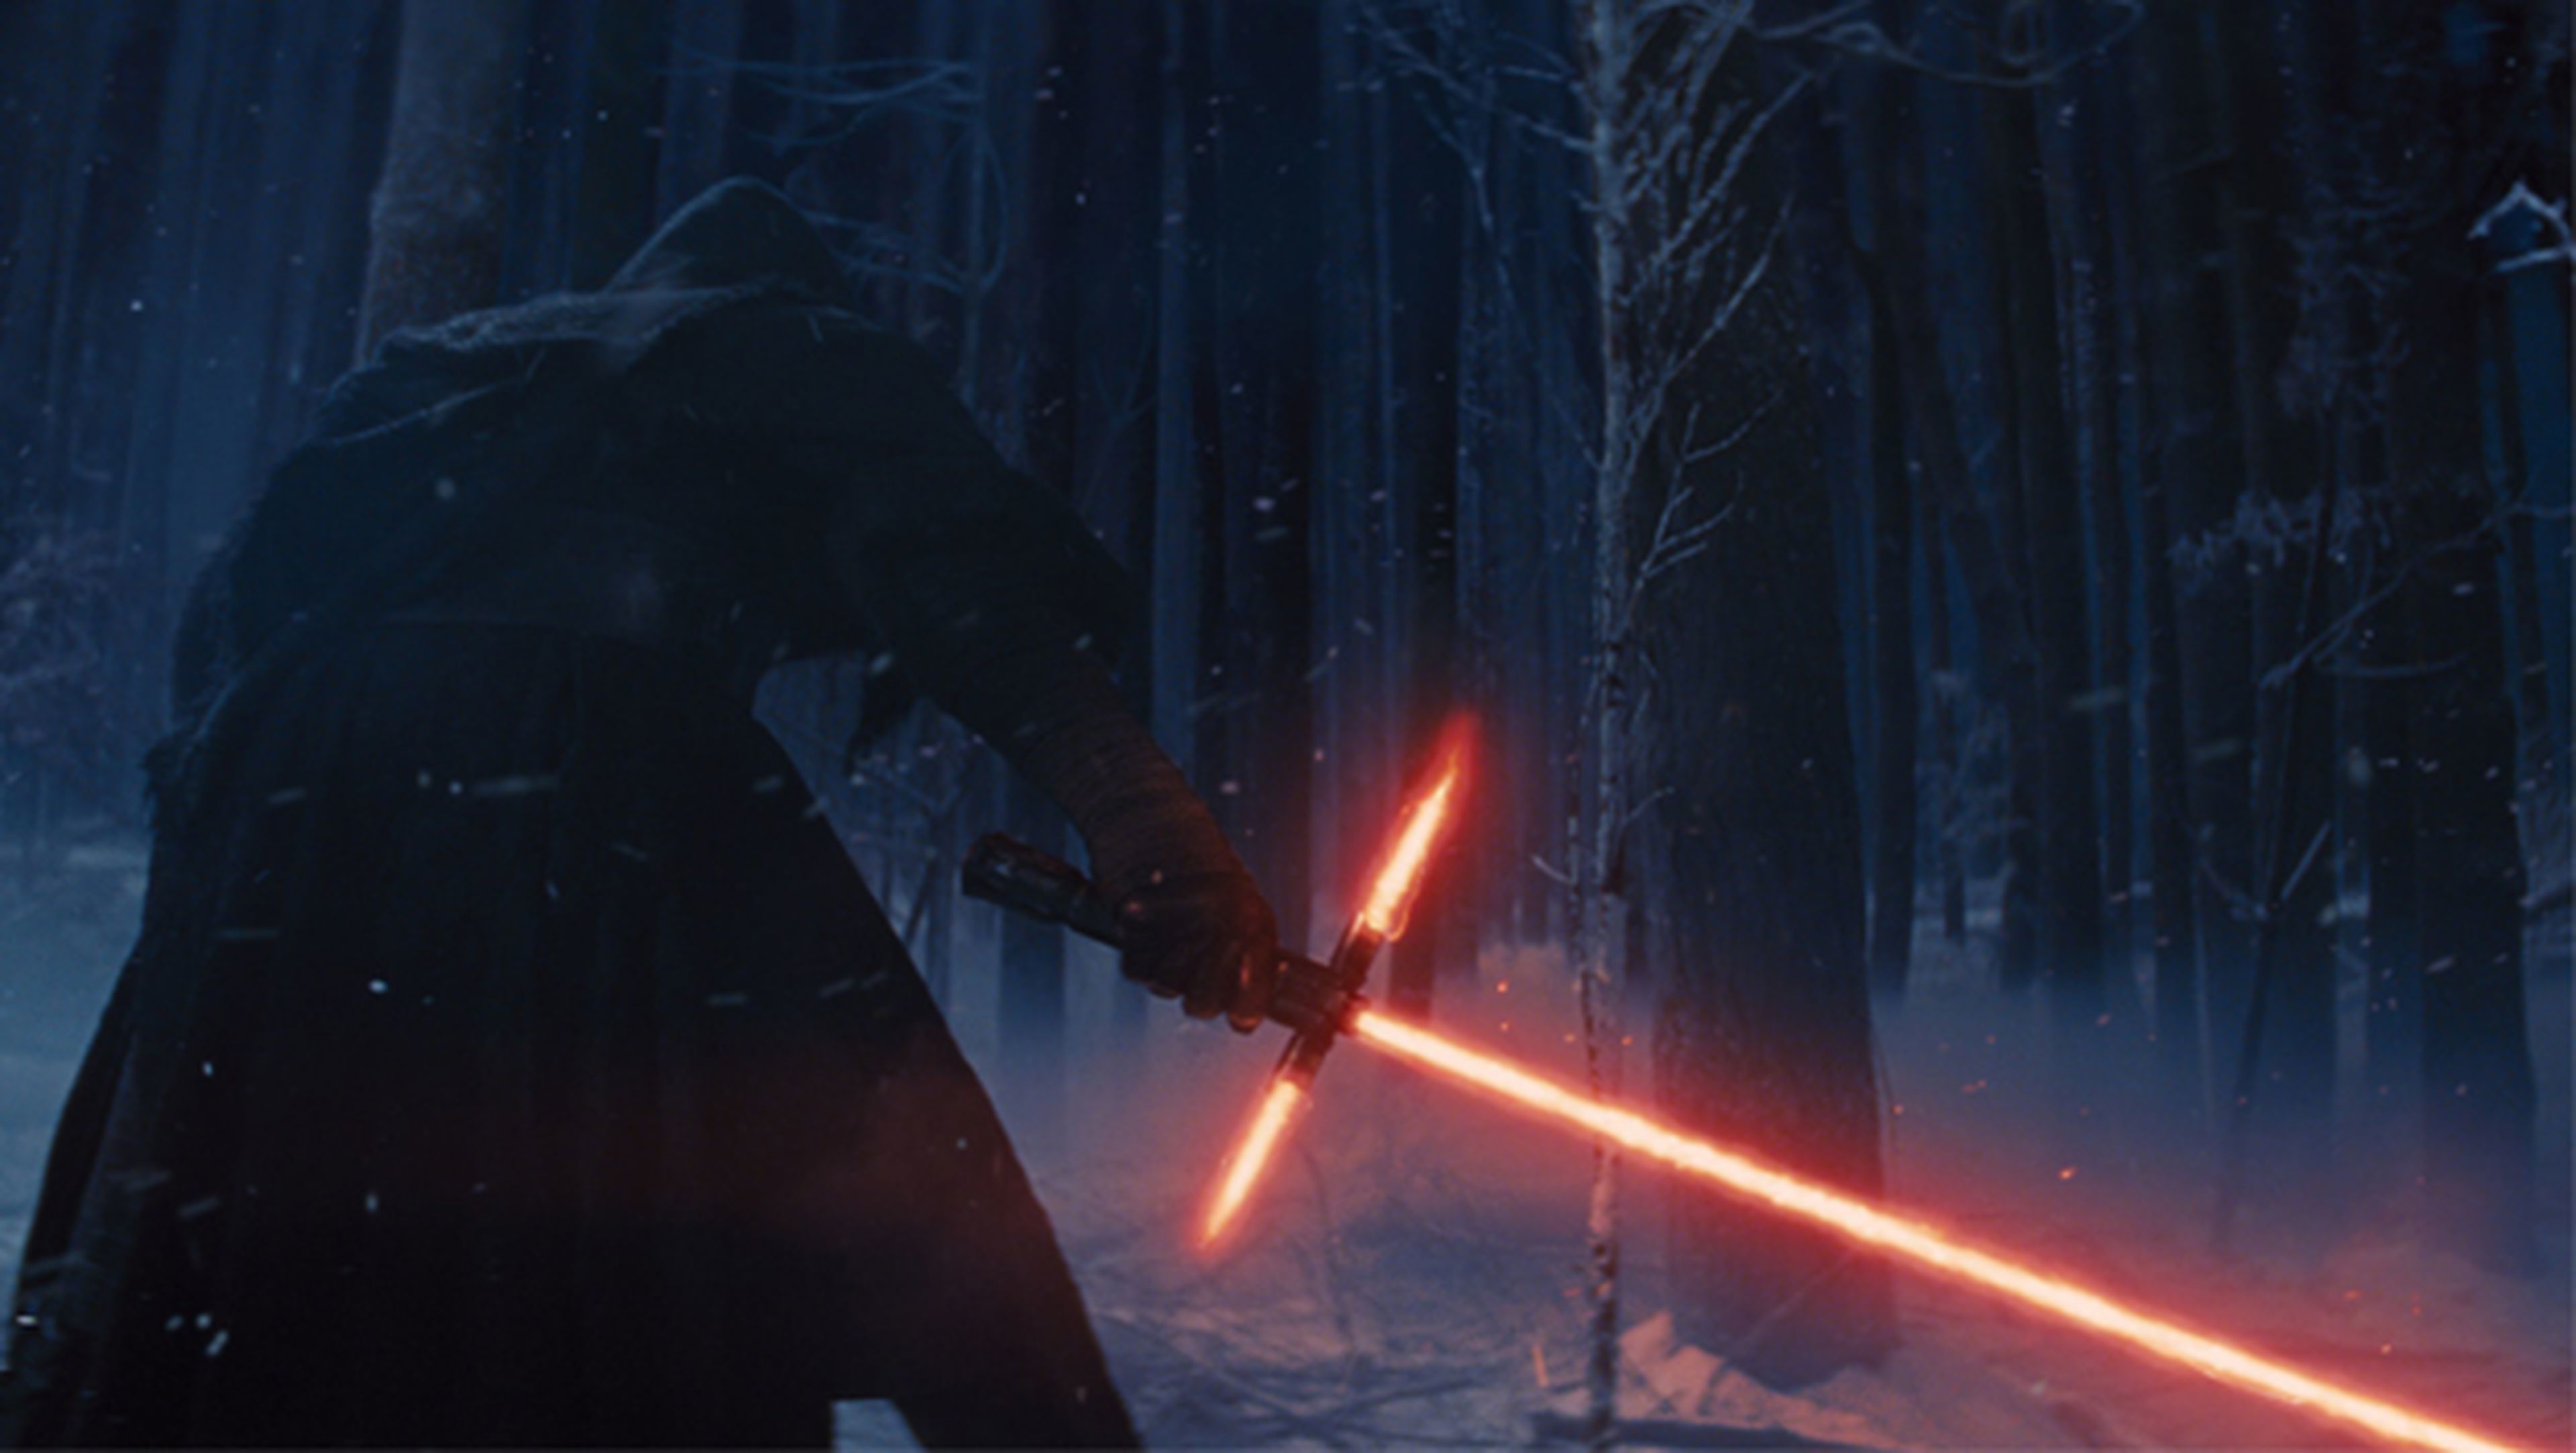 Star Wars Episodio VII: El despertar de la fuerza, ya a la venta en DVD y Blu-ray